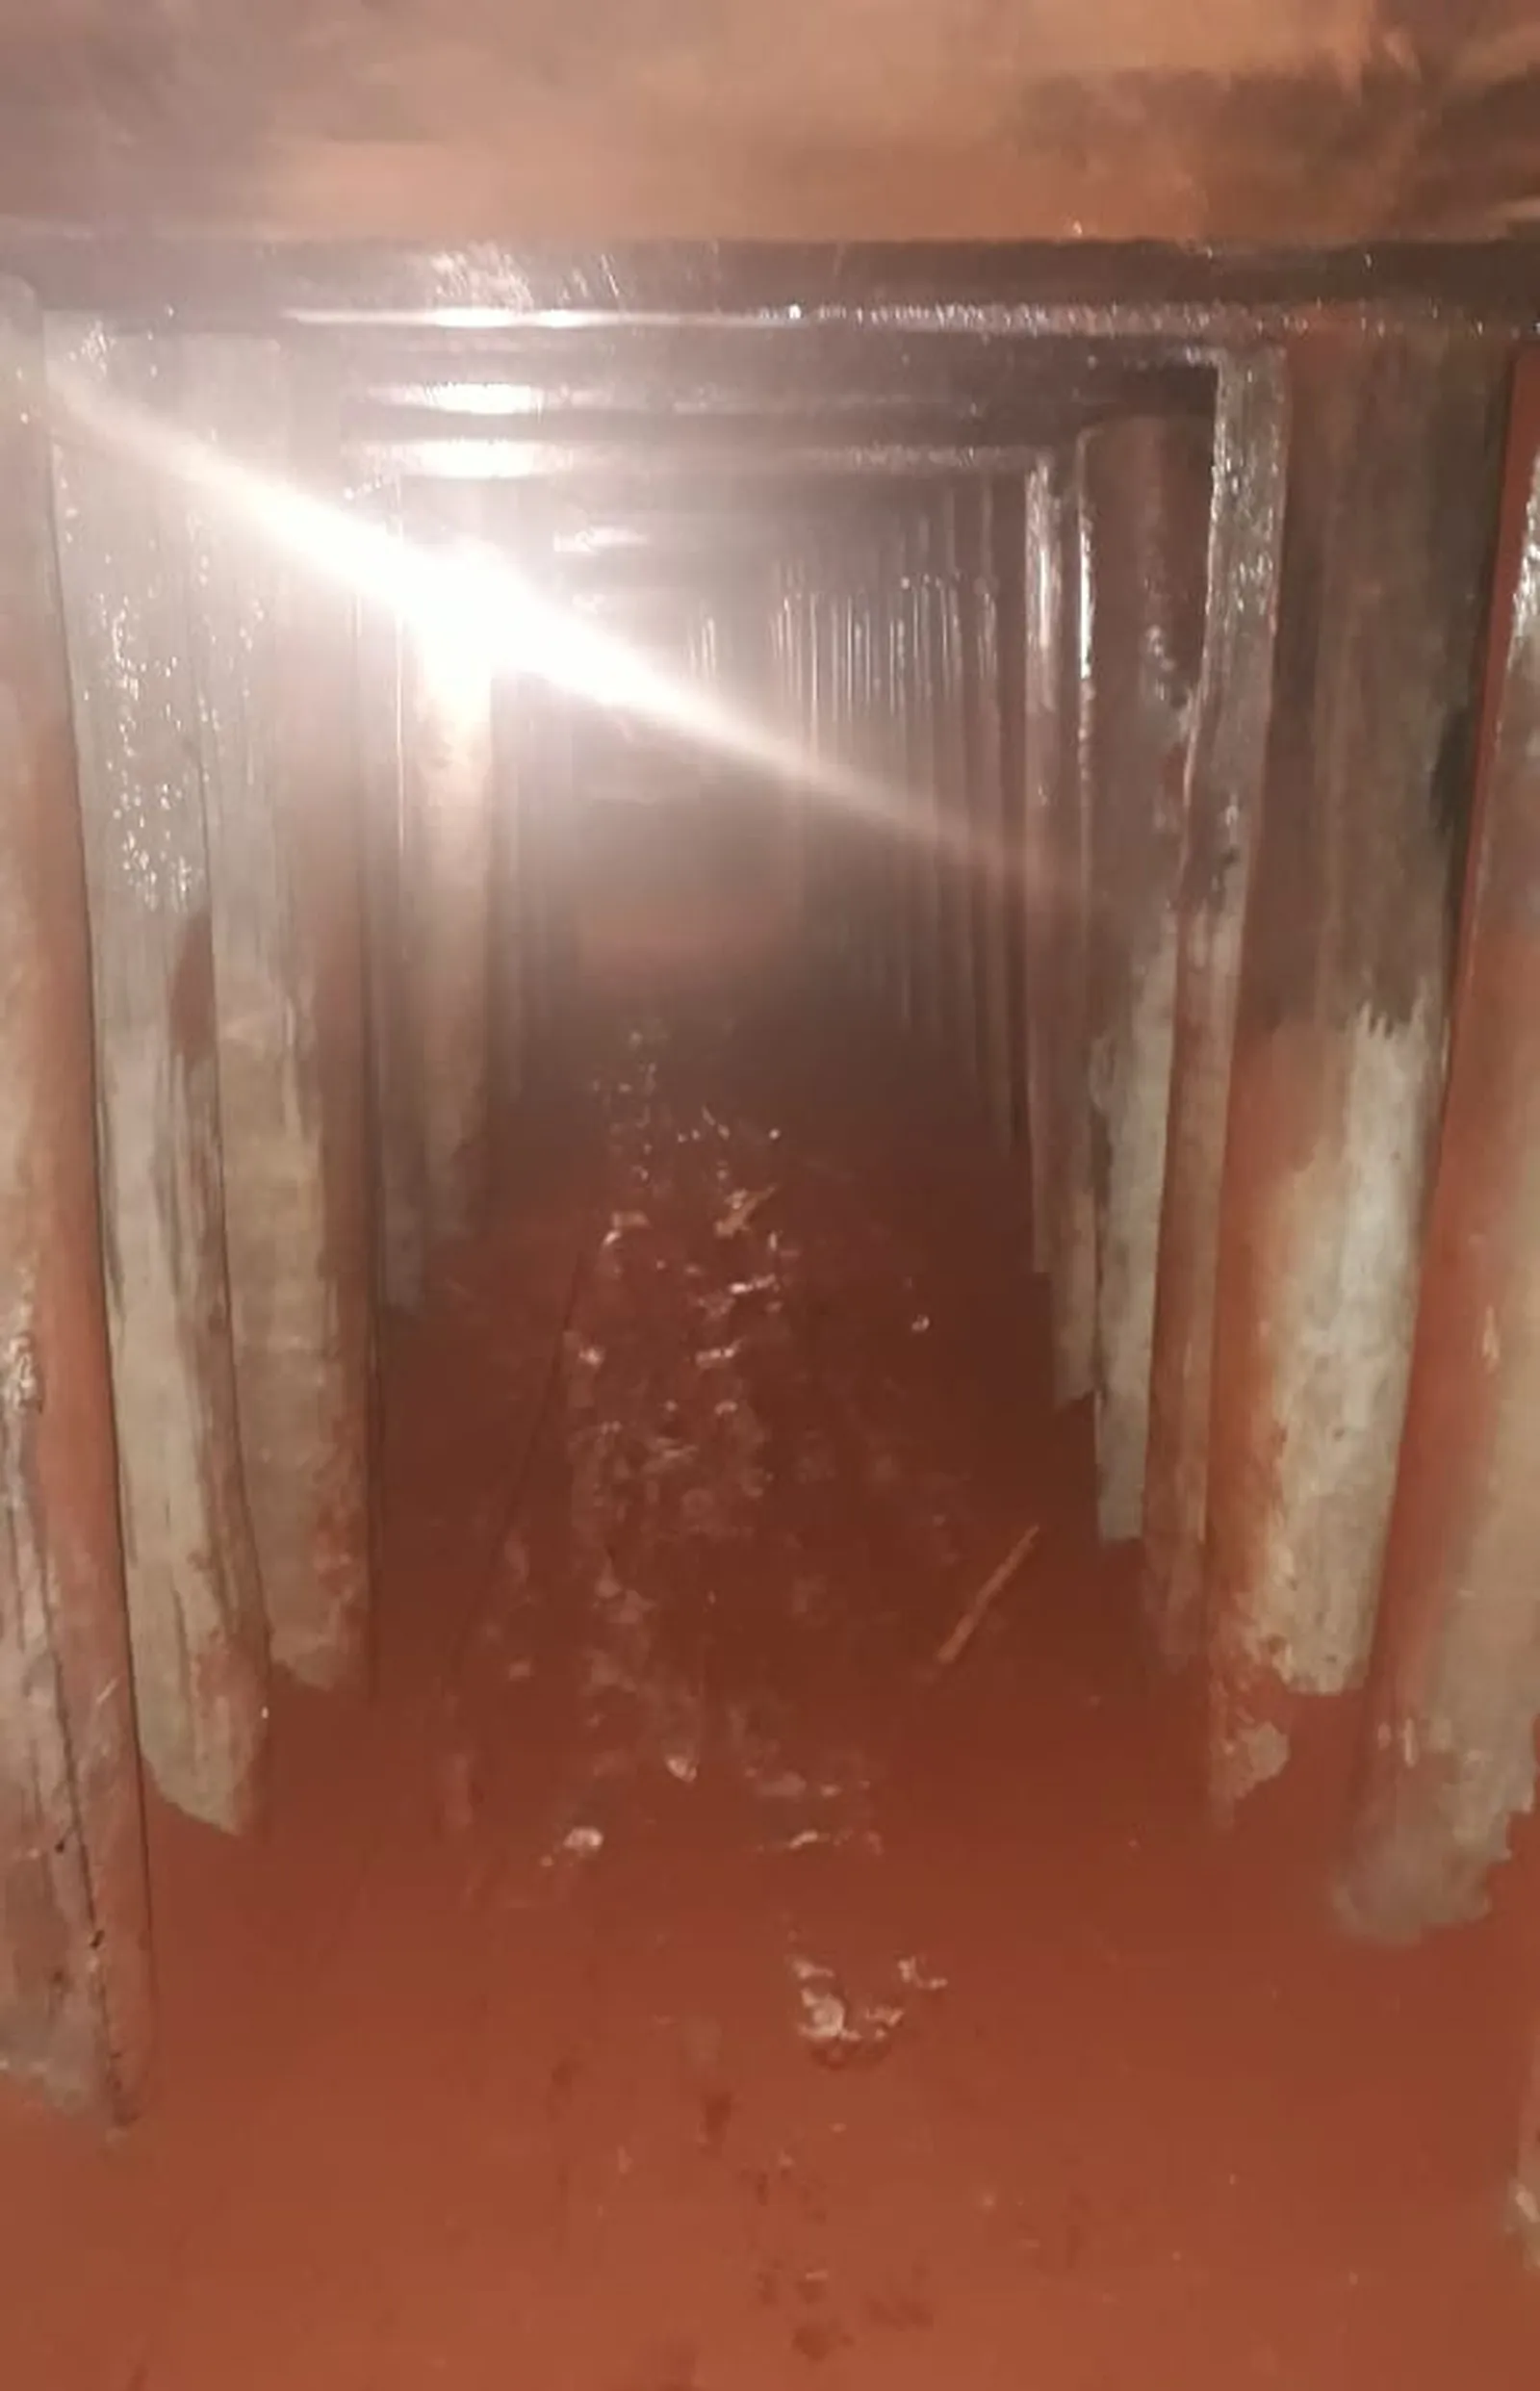 Bandido que escavou túnel para chegar ao cofre do Banco do Brasil fugiu da cadeia cavando outro túnel, diz polícia